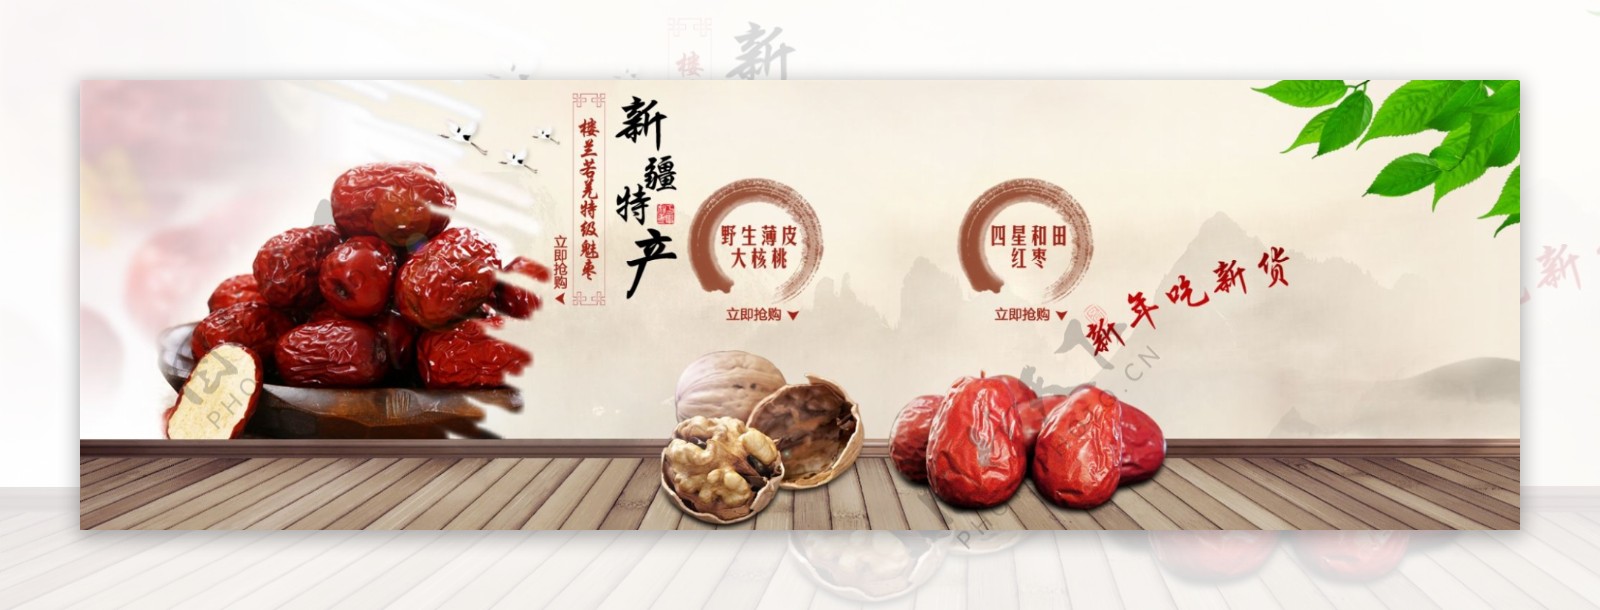 红枣食品海报图片